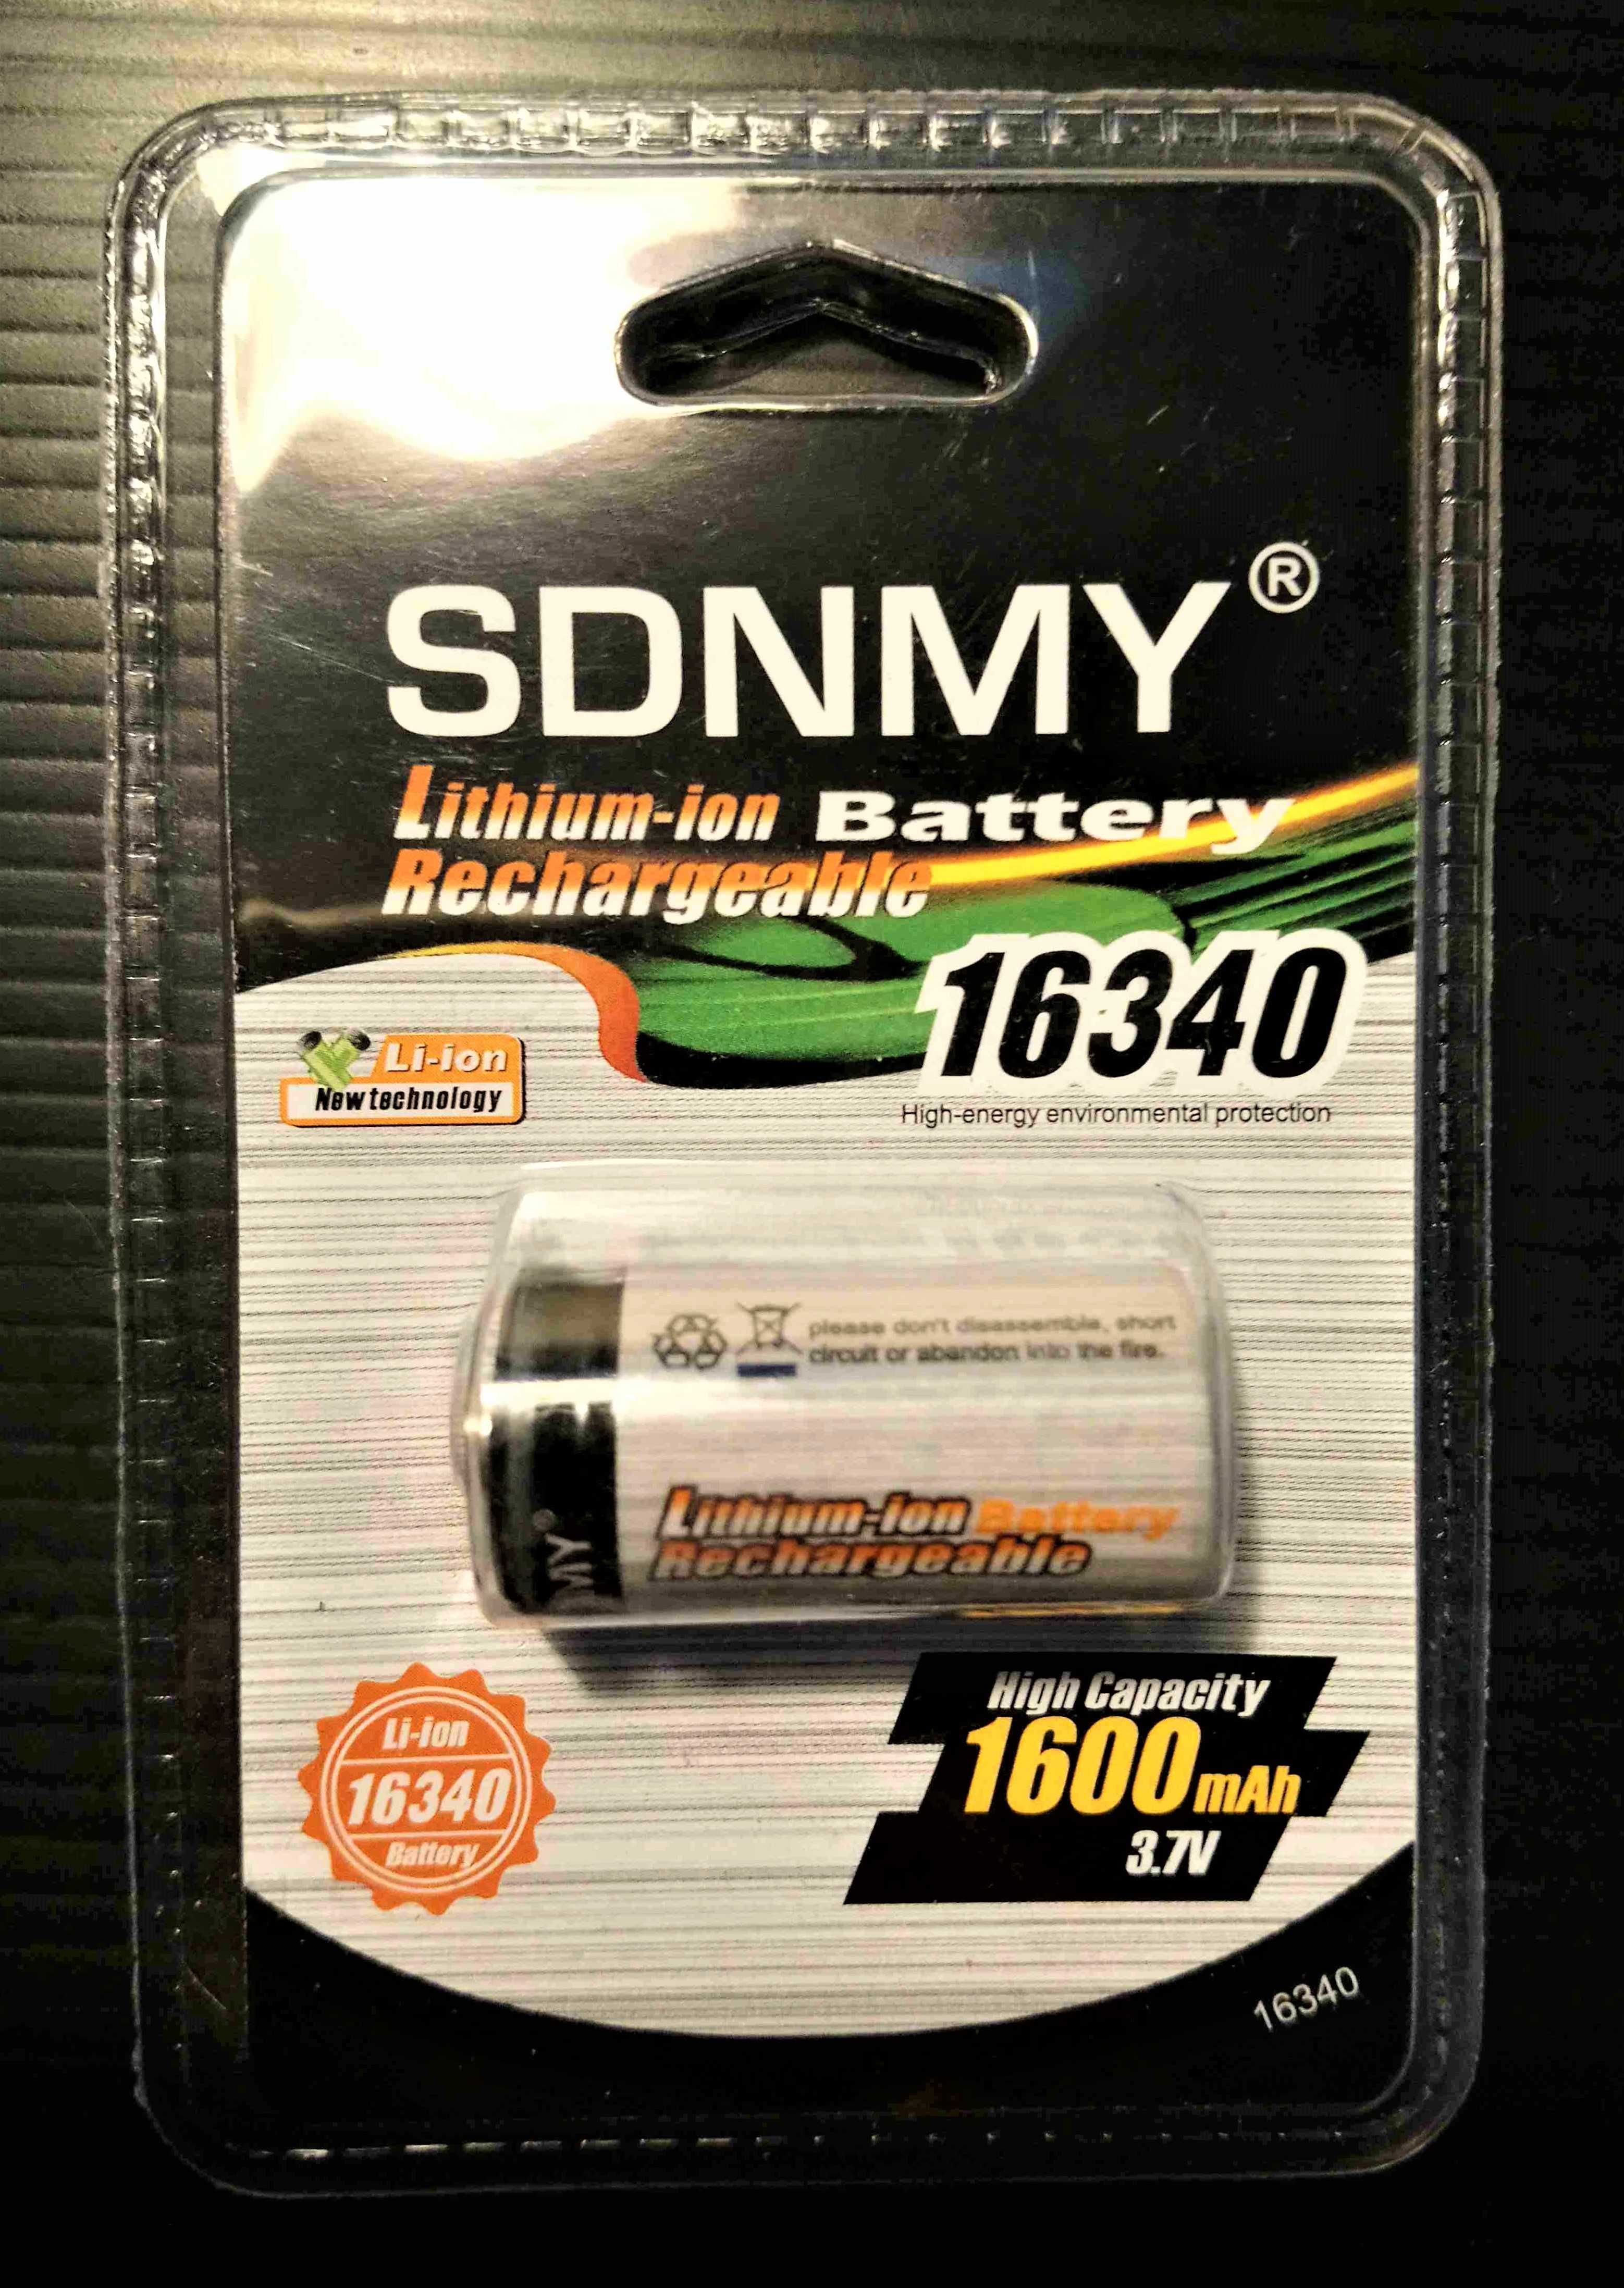 Bateria pilha Li-ion recarregável Sdnmy 16340